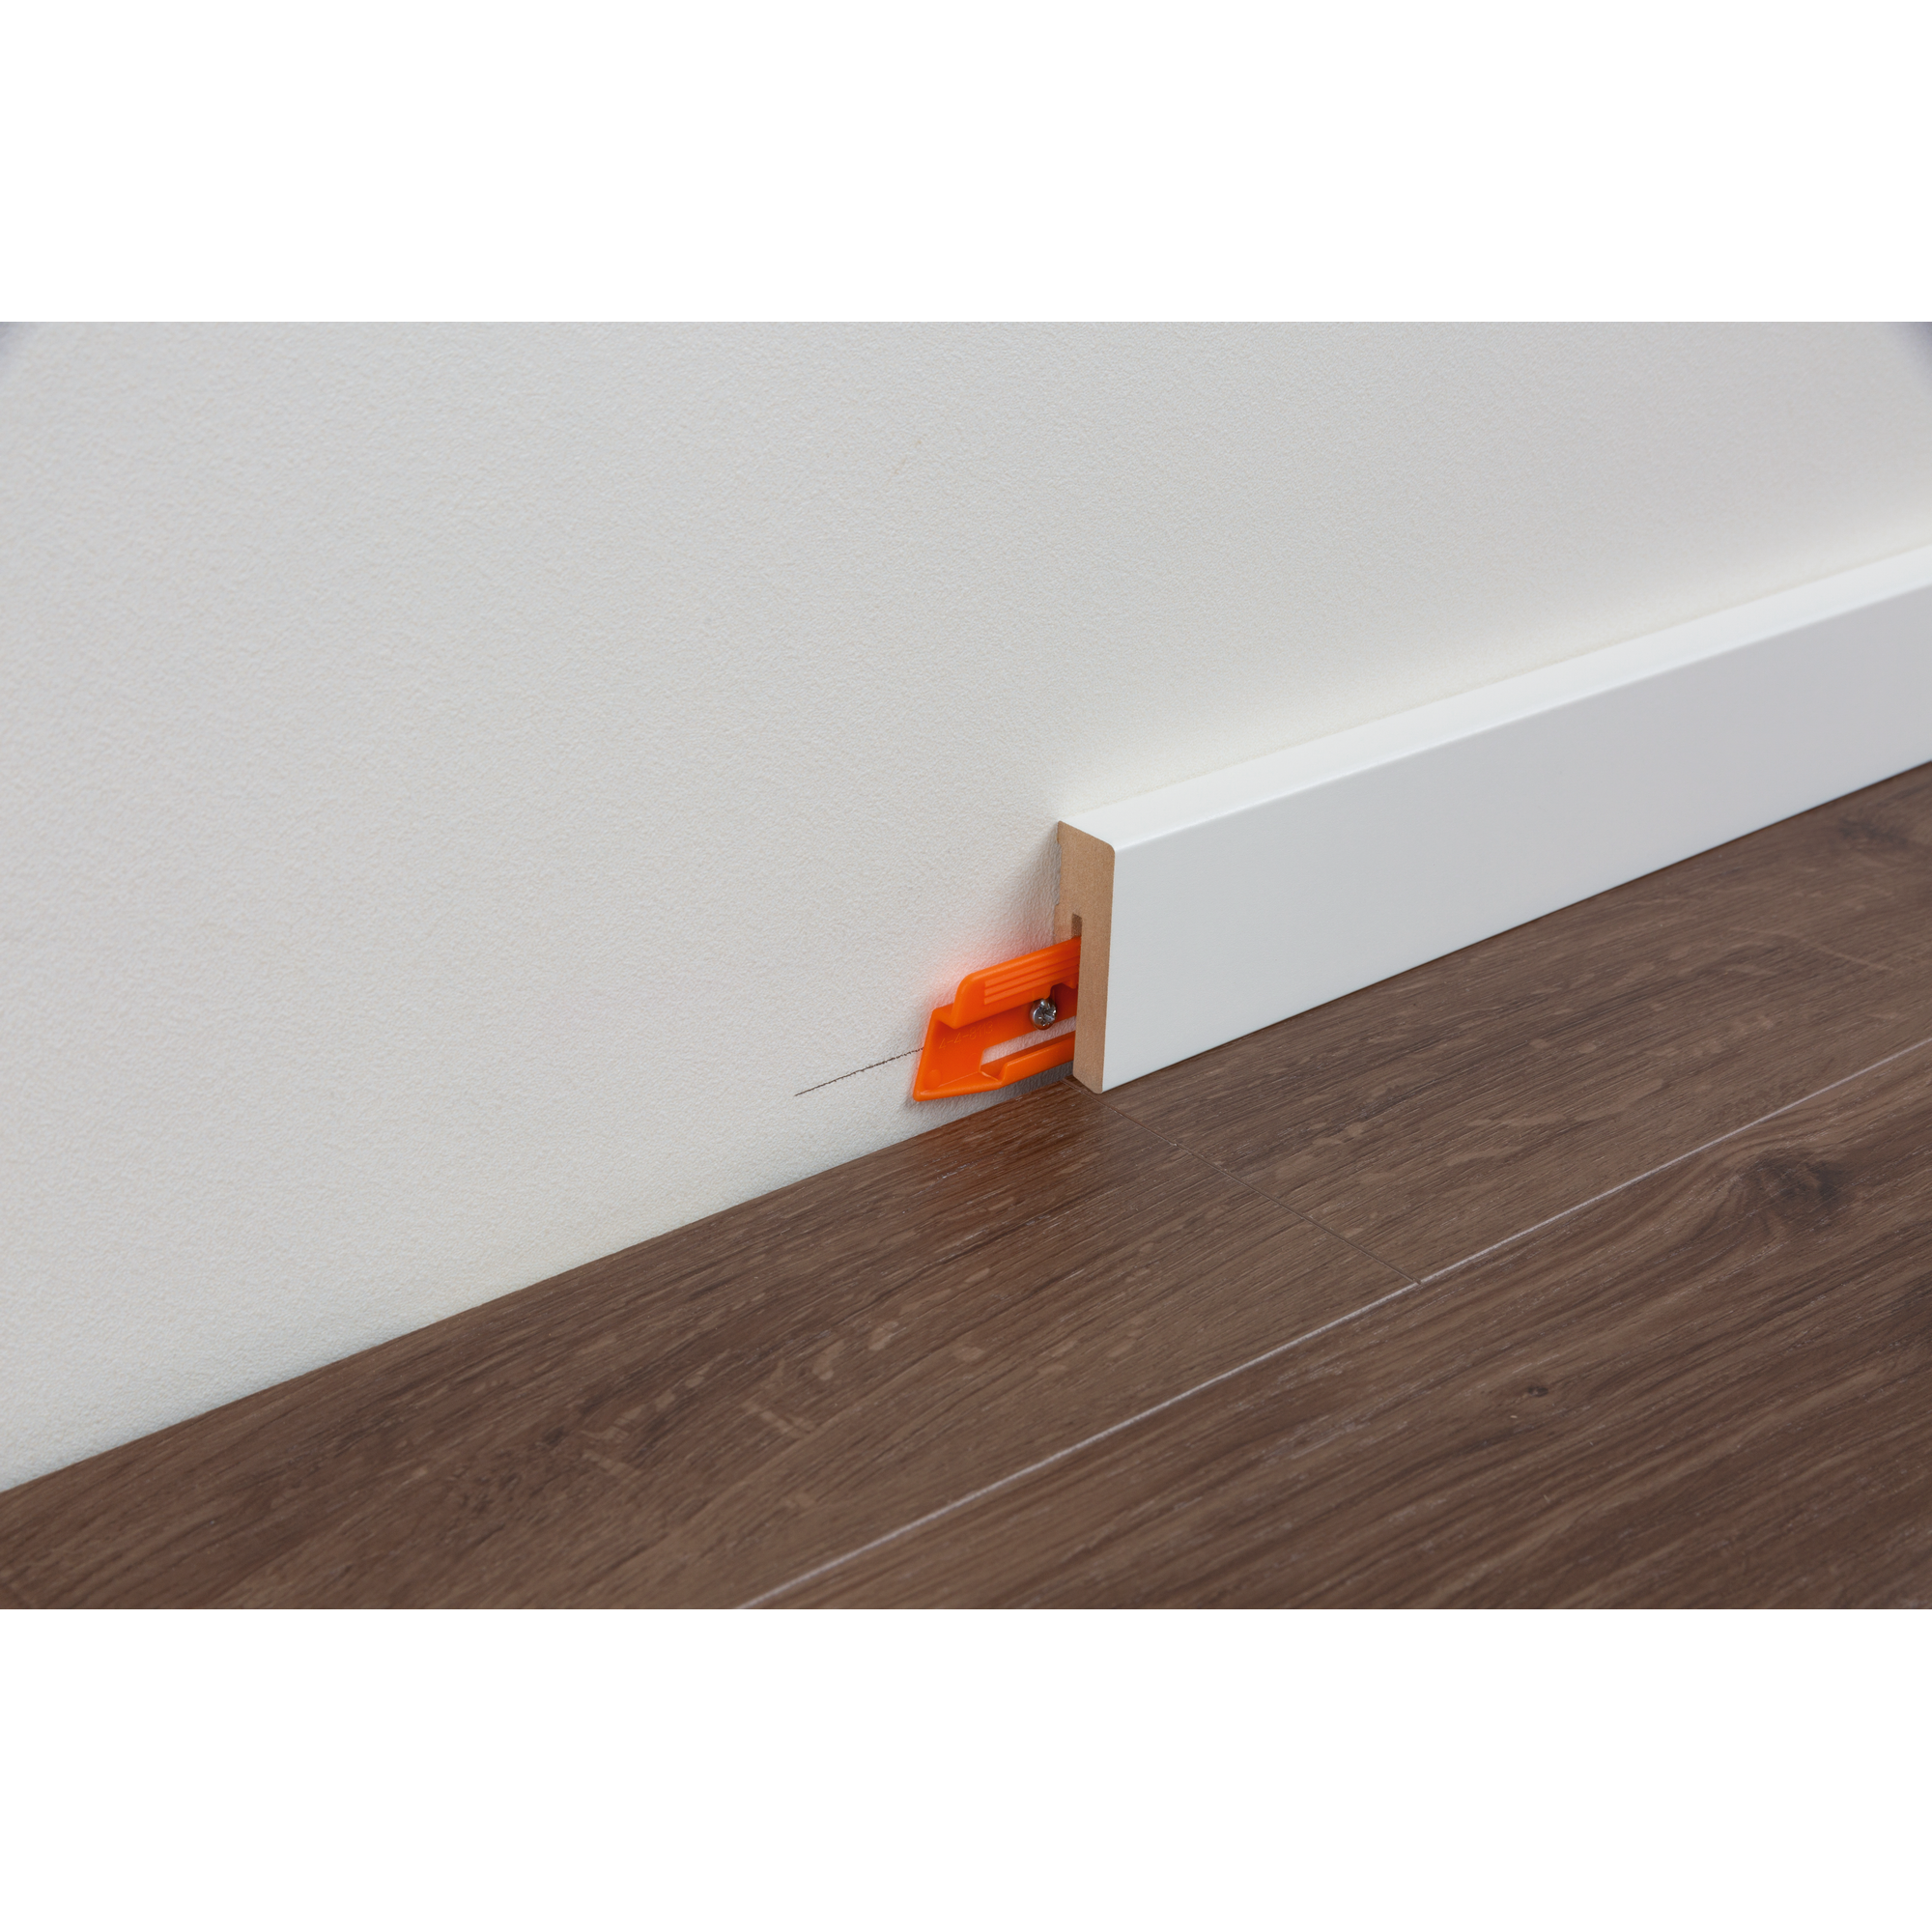 Clips für Sockelleisten SL 3 orange, 24 Stück + product picture